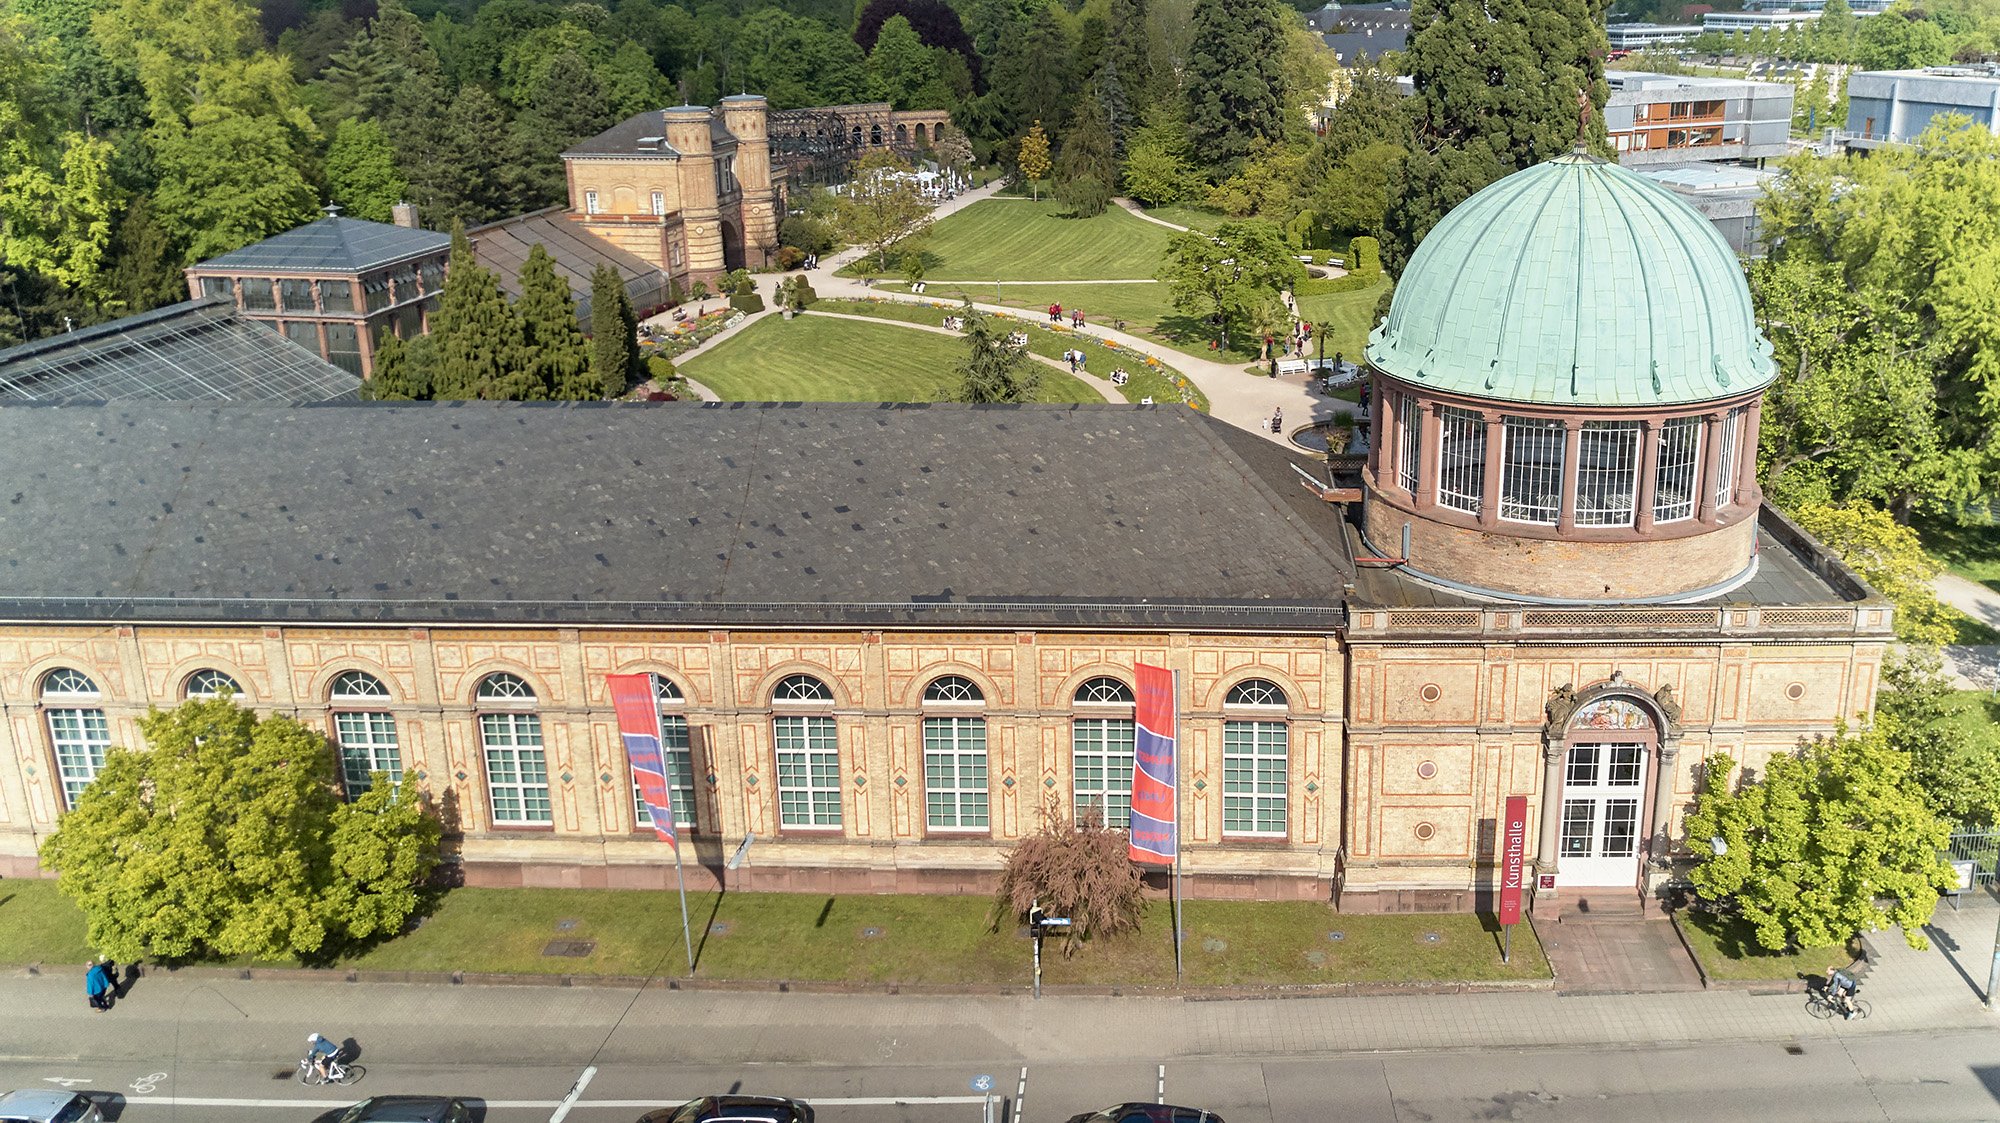 Foto der Orangerie der Staatlichen Kunsthalle Karlsruhe. Der Bau ist lang und hat hohe Rundbogenfenster. Am rechten Ende es Gebäudes hat es eine Kuppel.